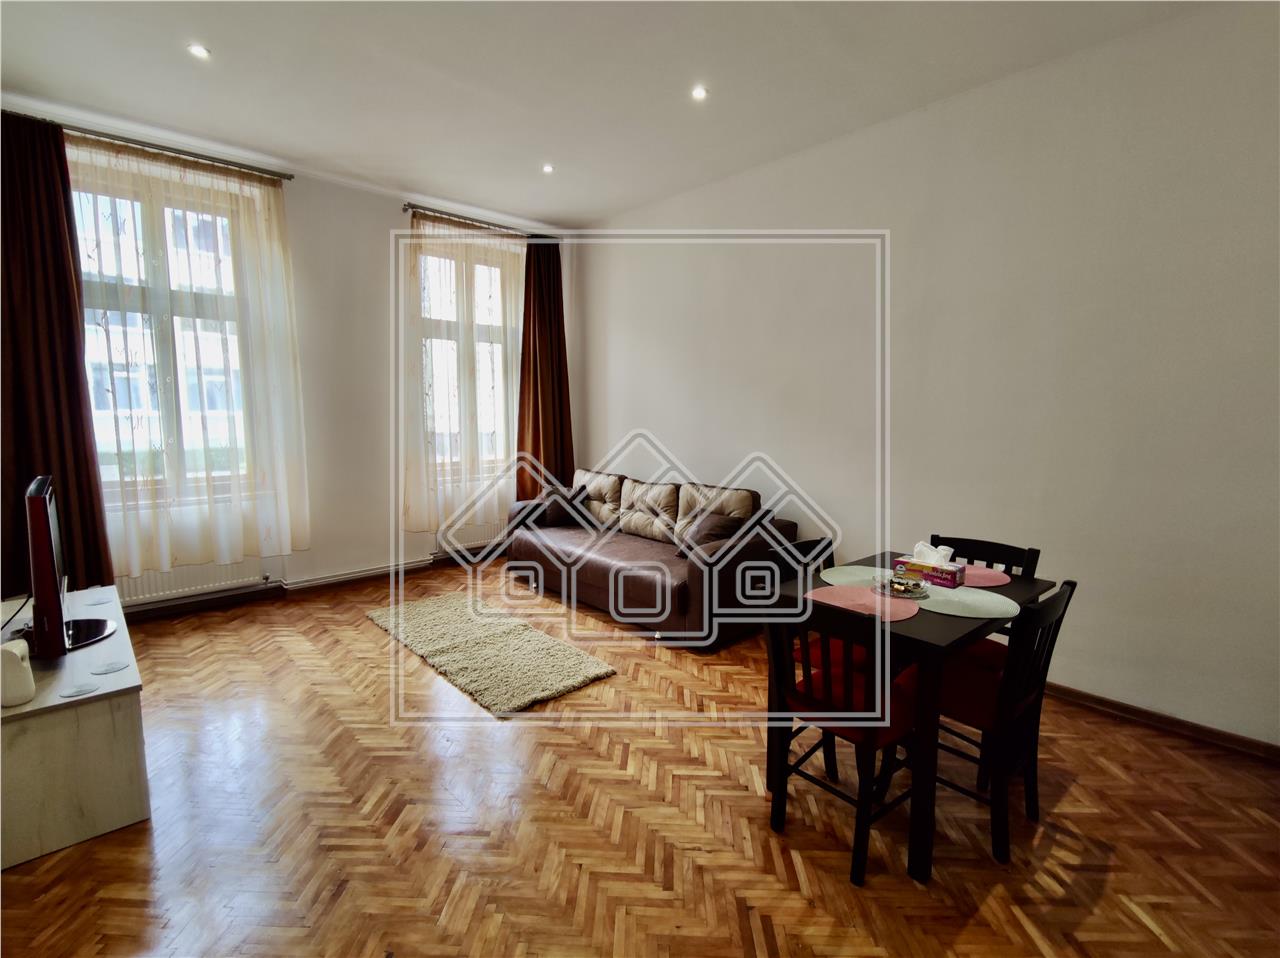 Wohnung zu verkaufen in Sibiu - 2 Zimmer - ideal f?r Investitionen